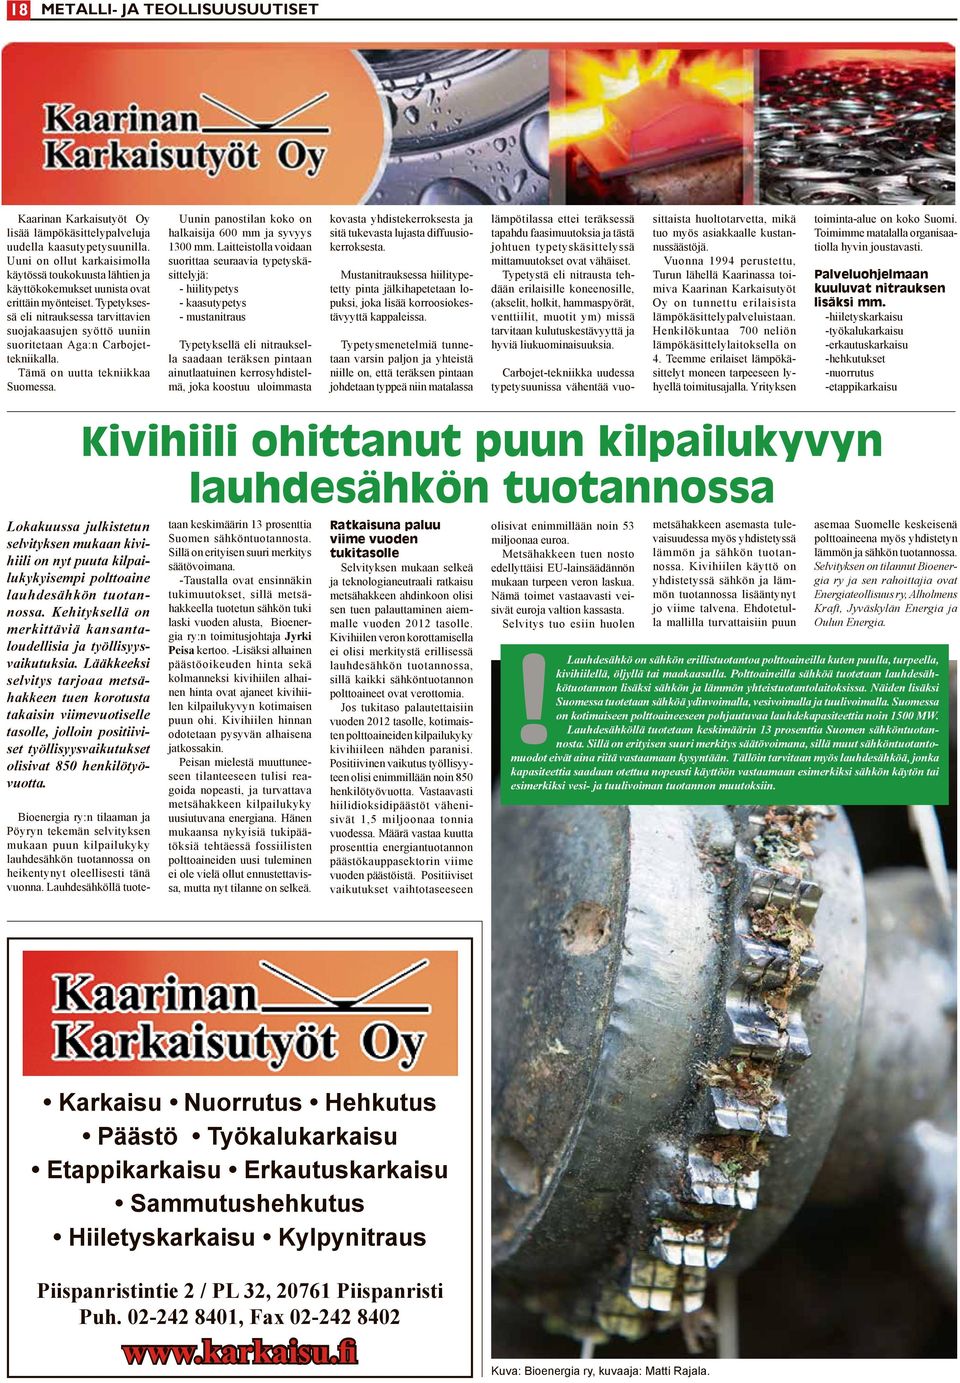 Typetyksessä eli nitrauksessa tarvittavien suojakaasujen syöttö uuniin suoritetaan Aga:n Carbojettekniikalla. Tämä on uutta tekniikkaa Suomessa.